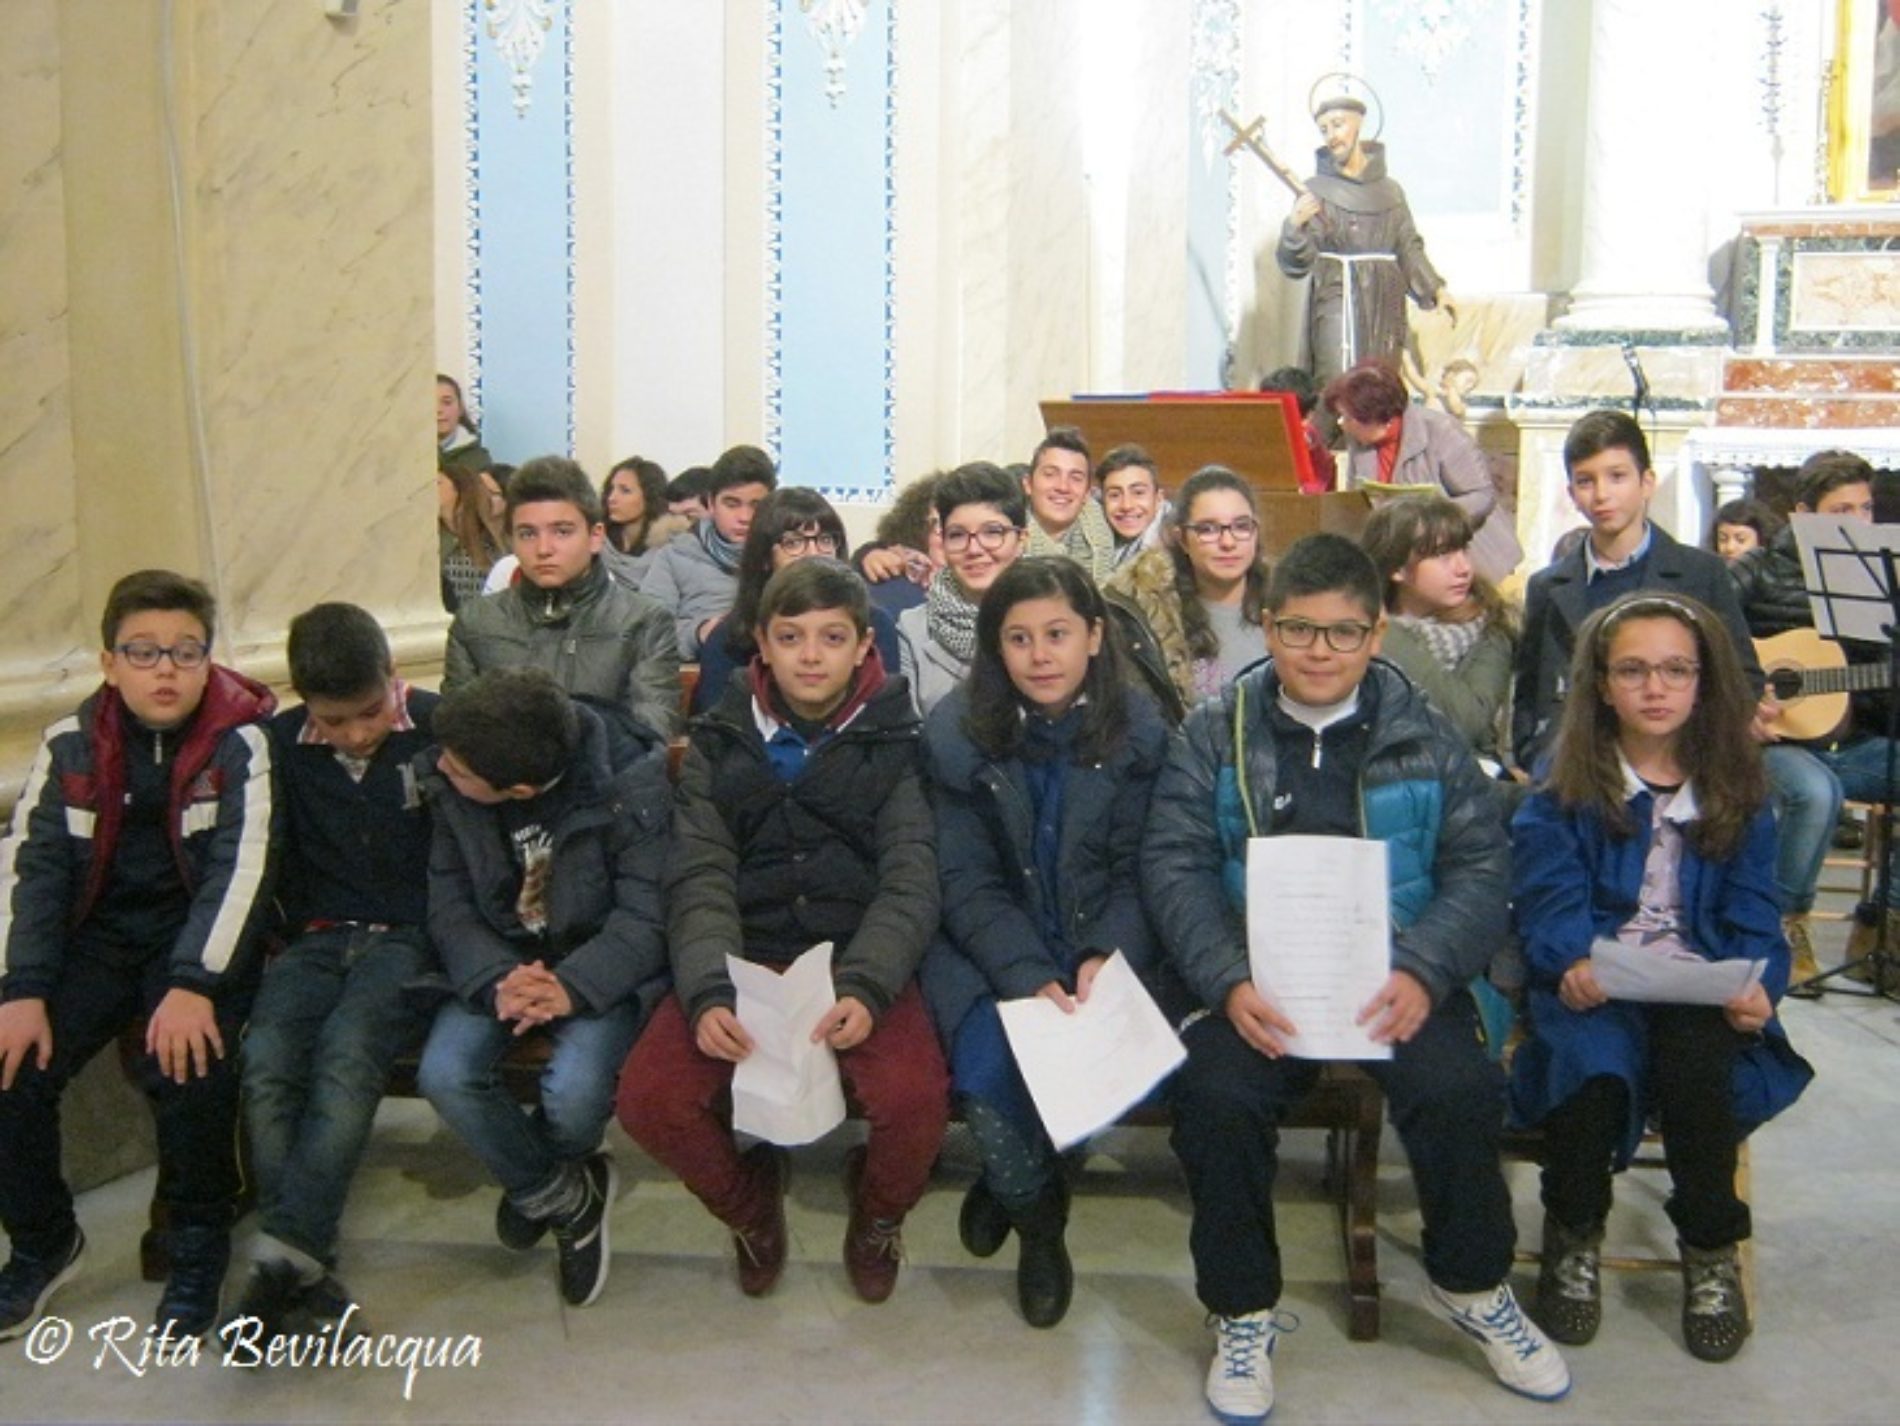 VIDEO: Le scuole ricordano Francesco Ferreri in Chiesa Madre